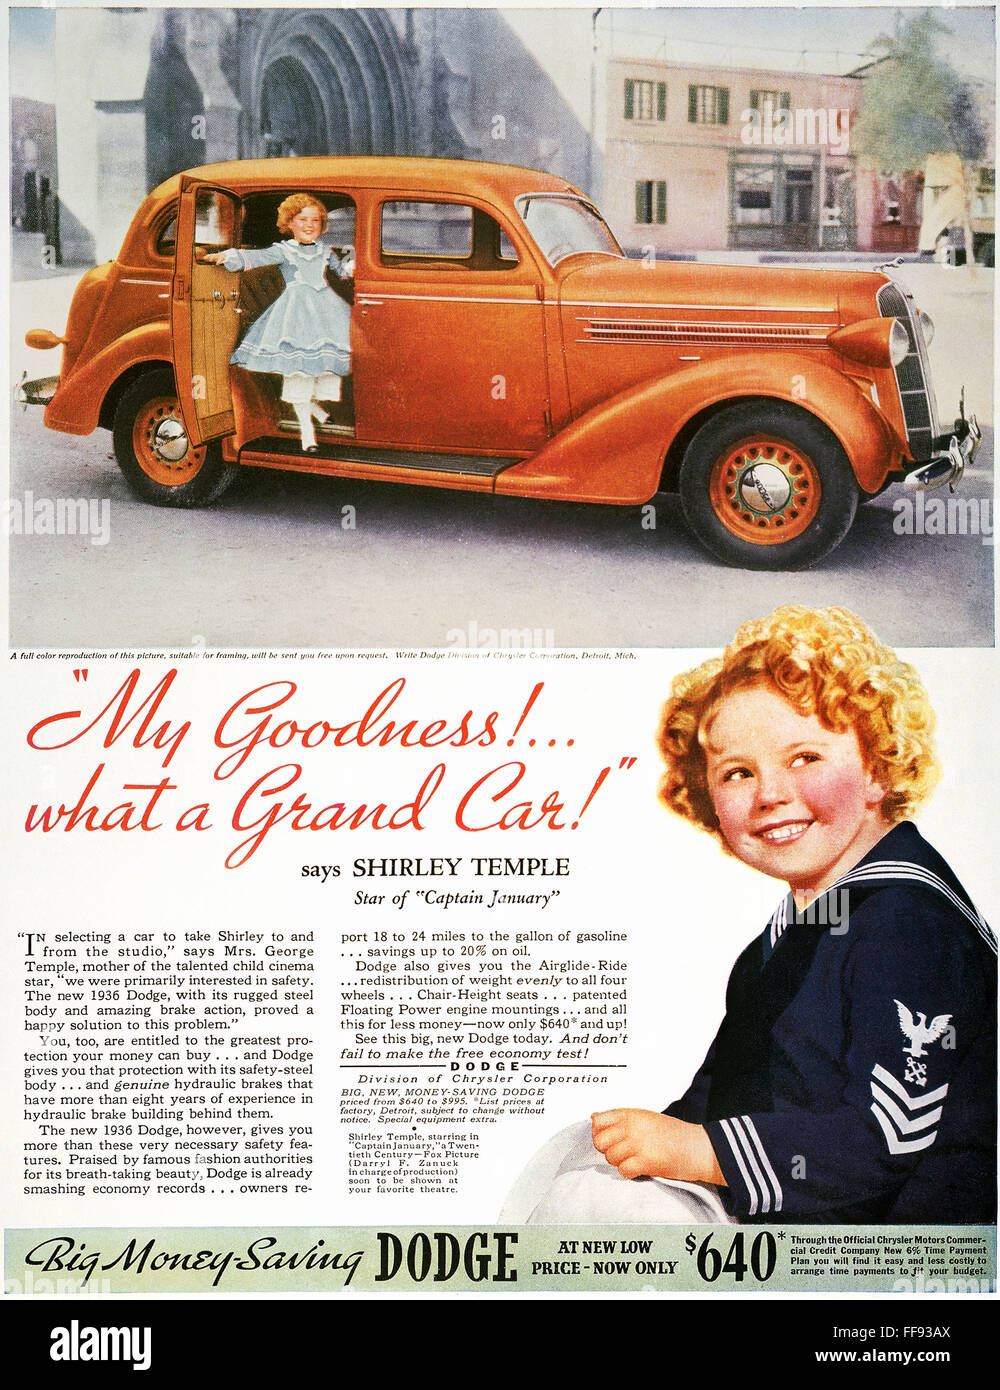 Vintage 1936 Chrysler Print Ad